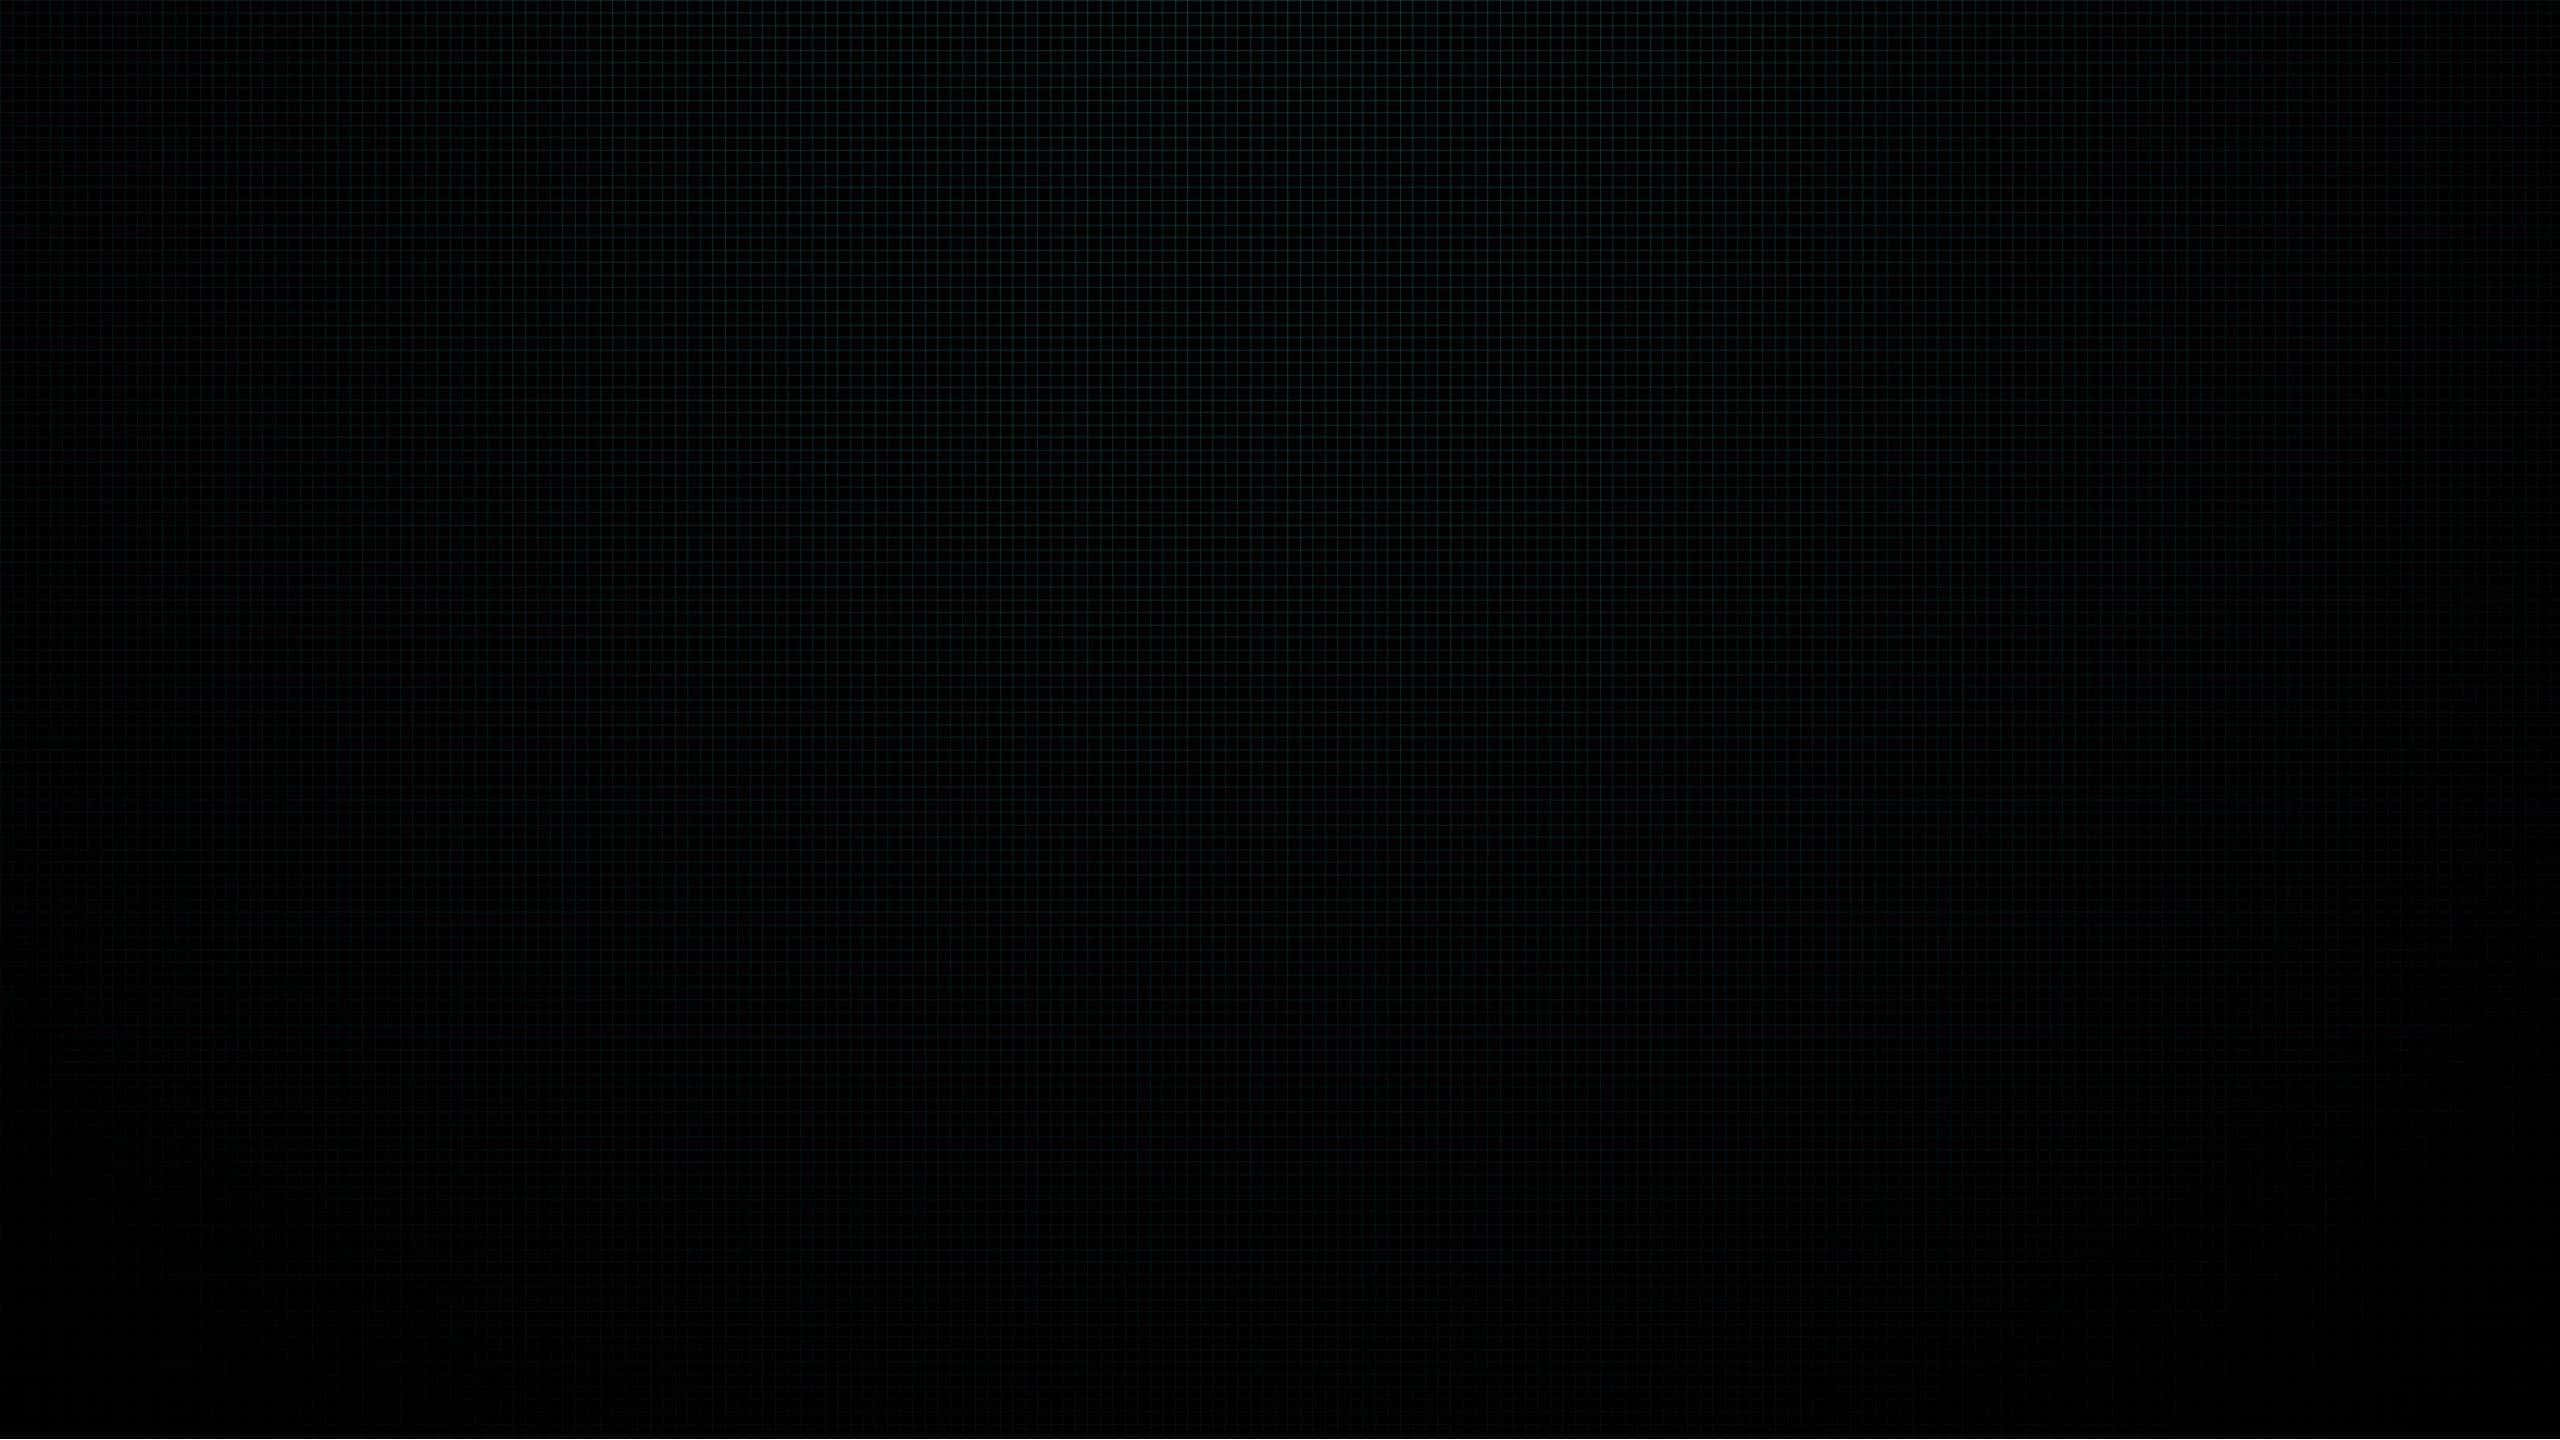 Pitchblack Hintergrund Mit Einer Auflösung Von 2560 X 1440